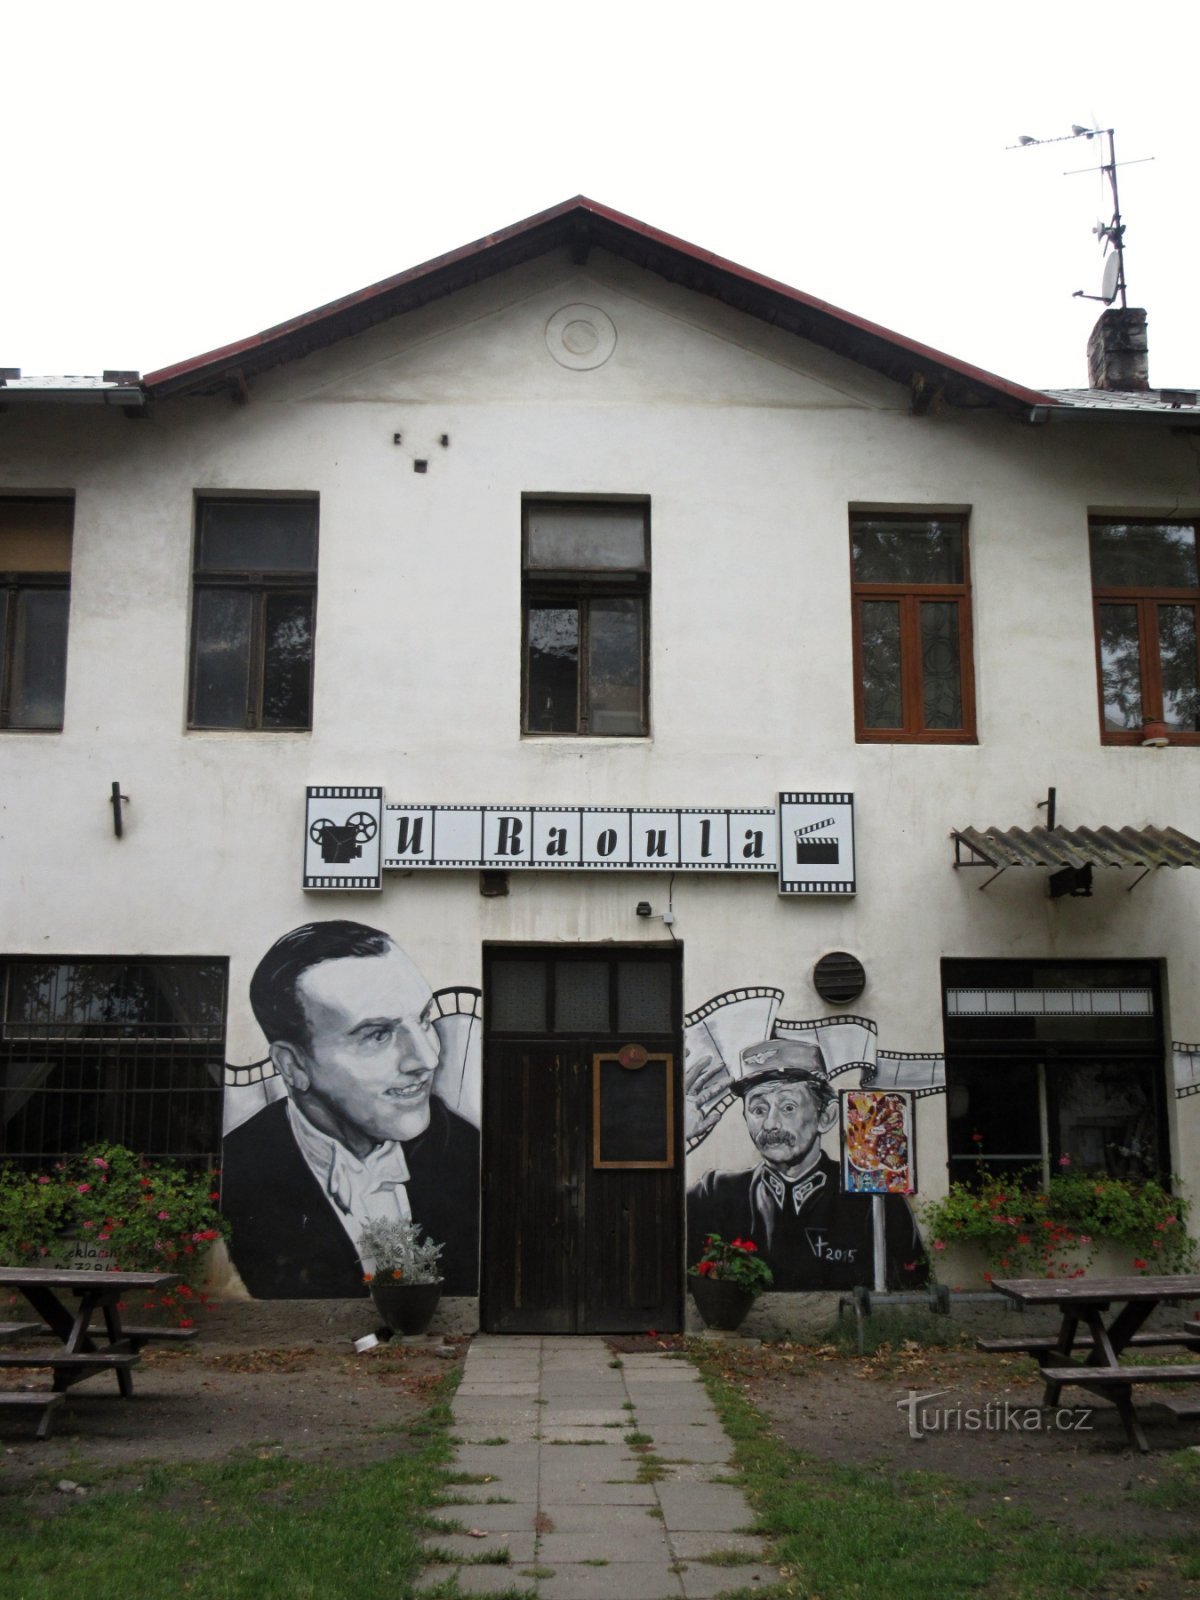 Chotětov - U Raoulova hiša (spomin na igralca Raoula Száchníla)